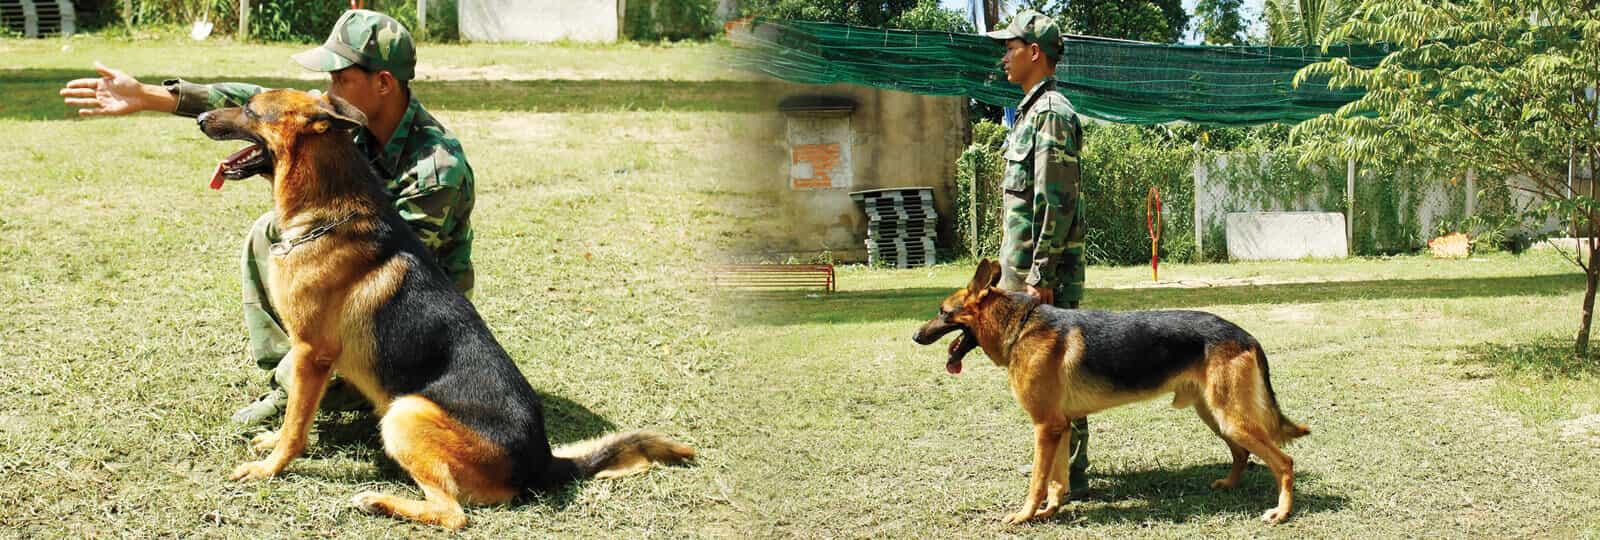 Trung tâm huấn luyện chó nghiệp vụ K9